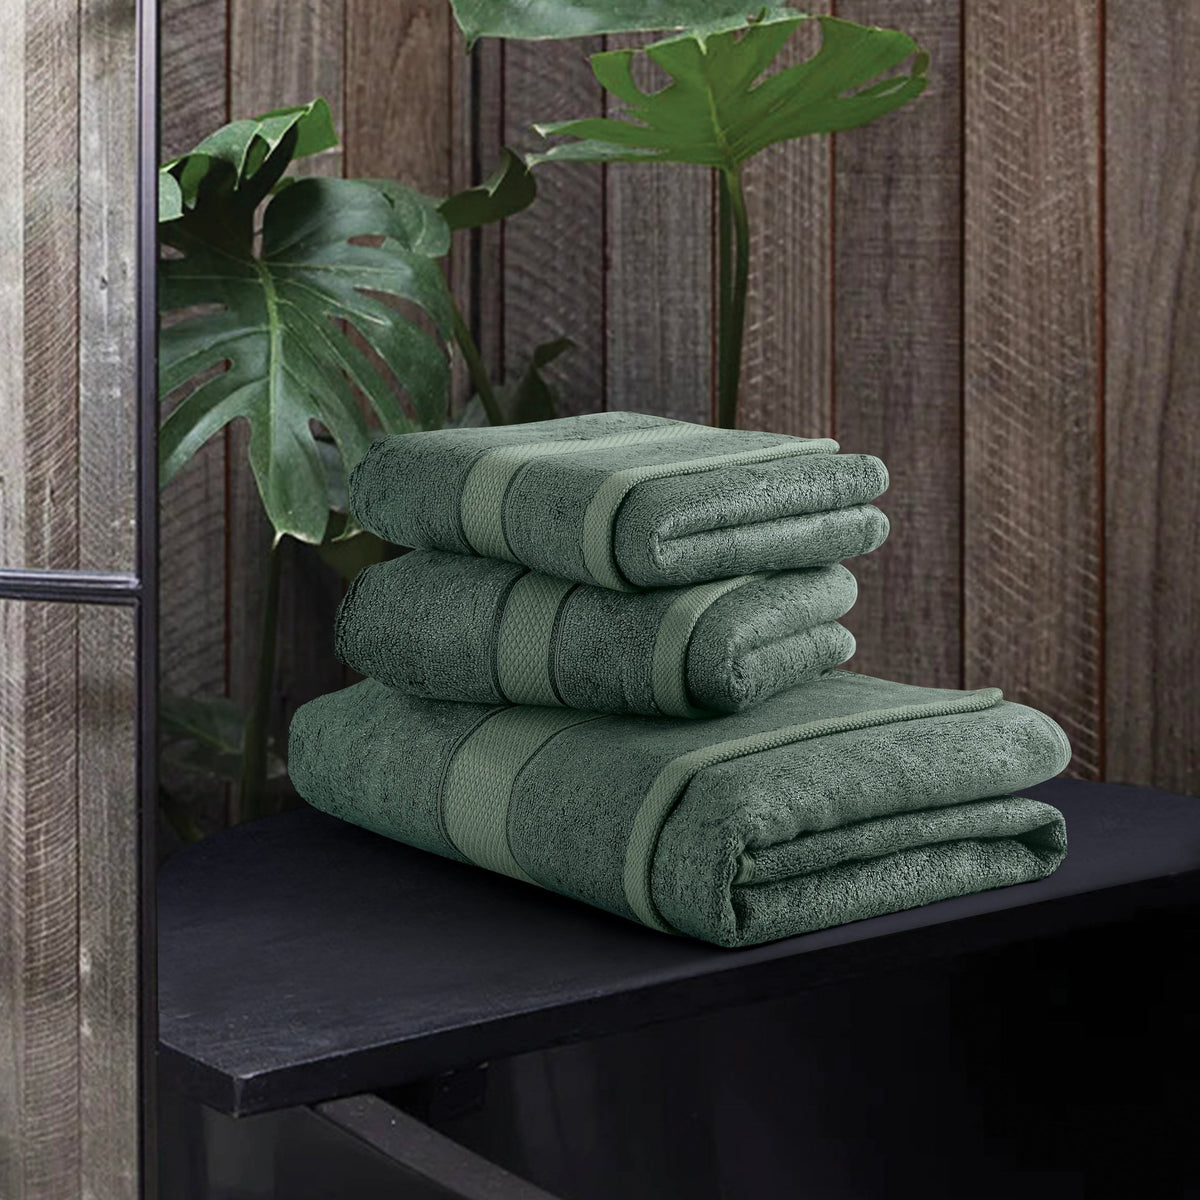 Malako Green Bamboo Towel (600GSM) - MALAKO